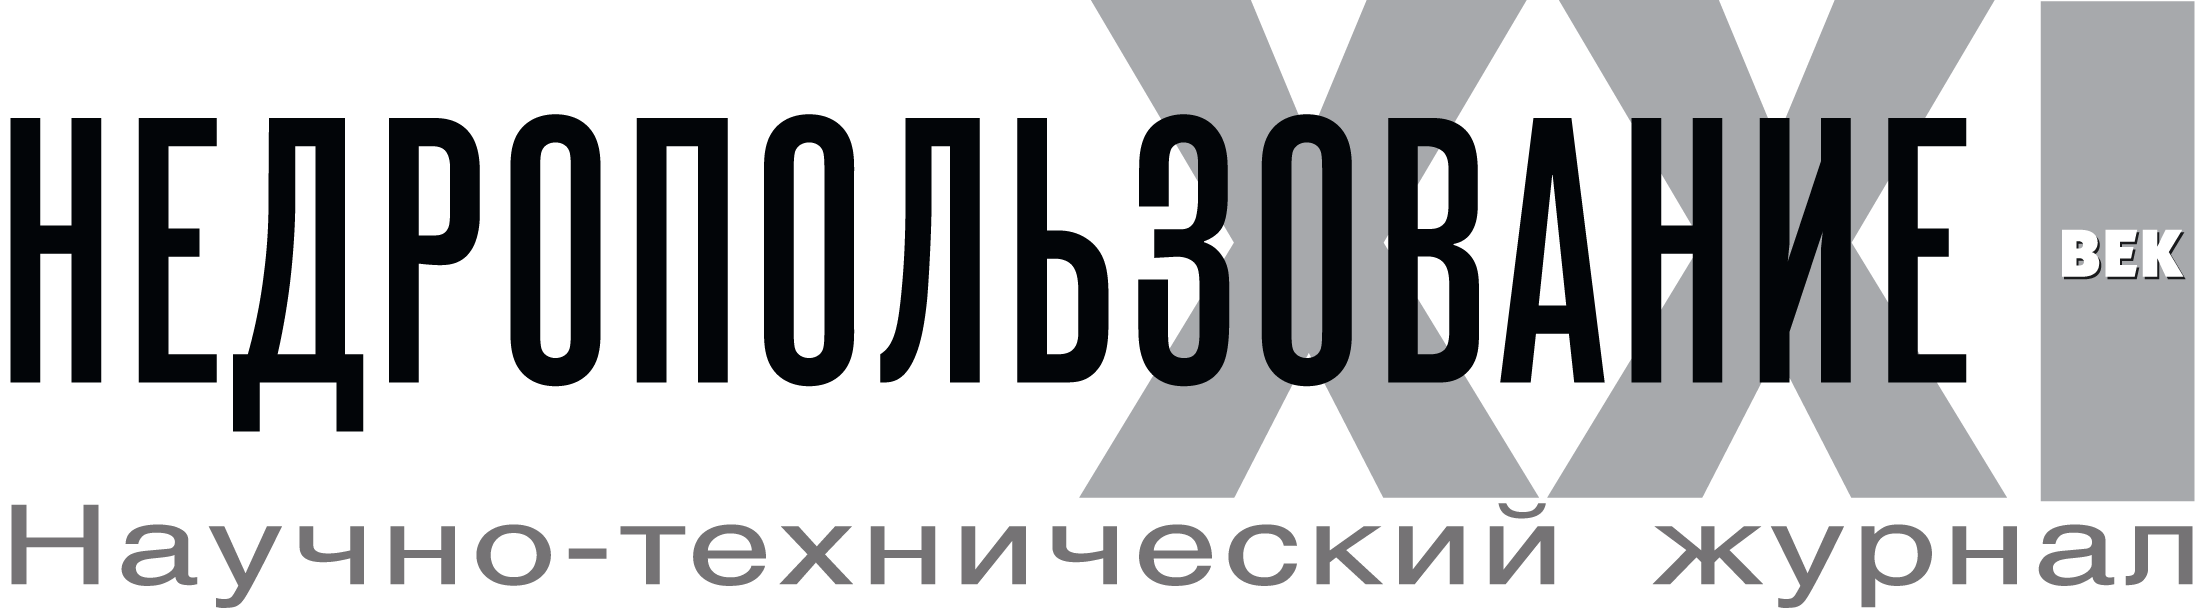 Логотип журнала Недропользование 21 век